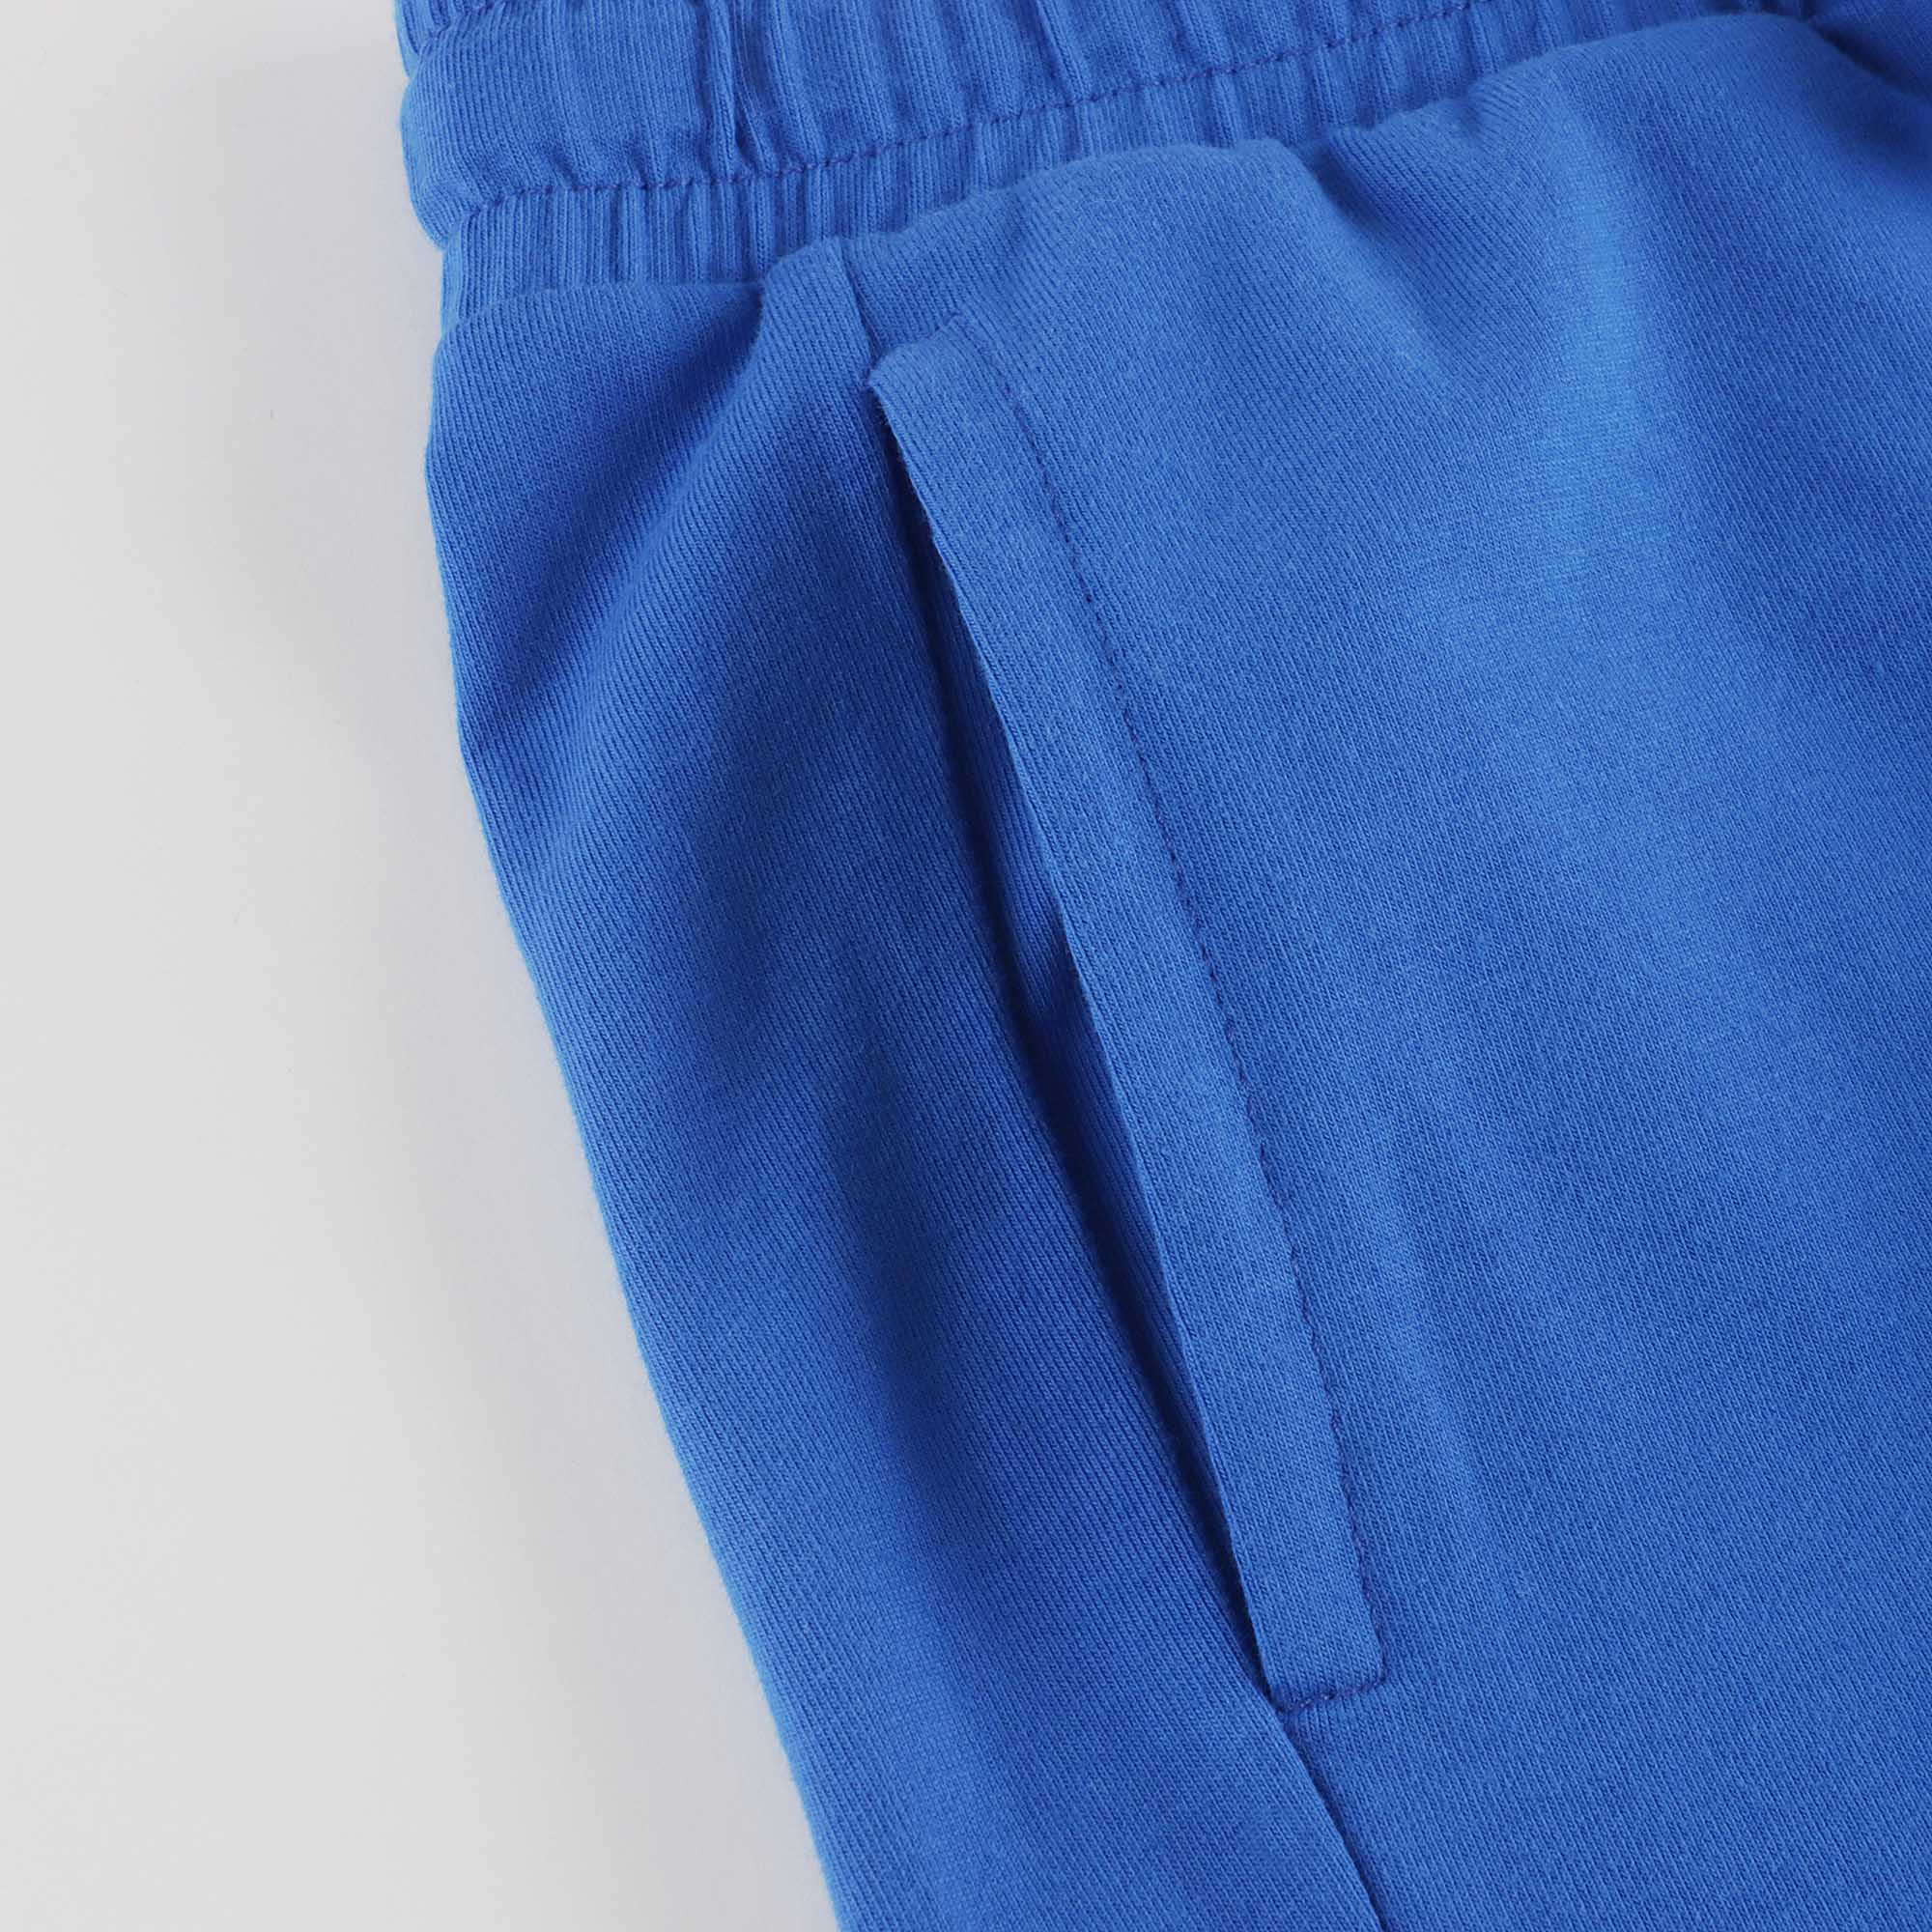 Boys Blue Logo Cotton Shorts